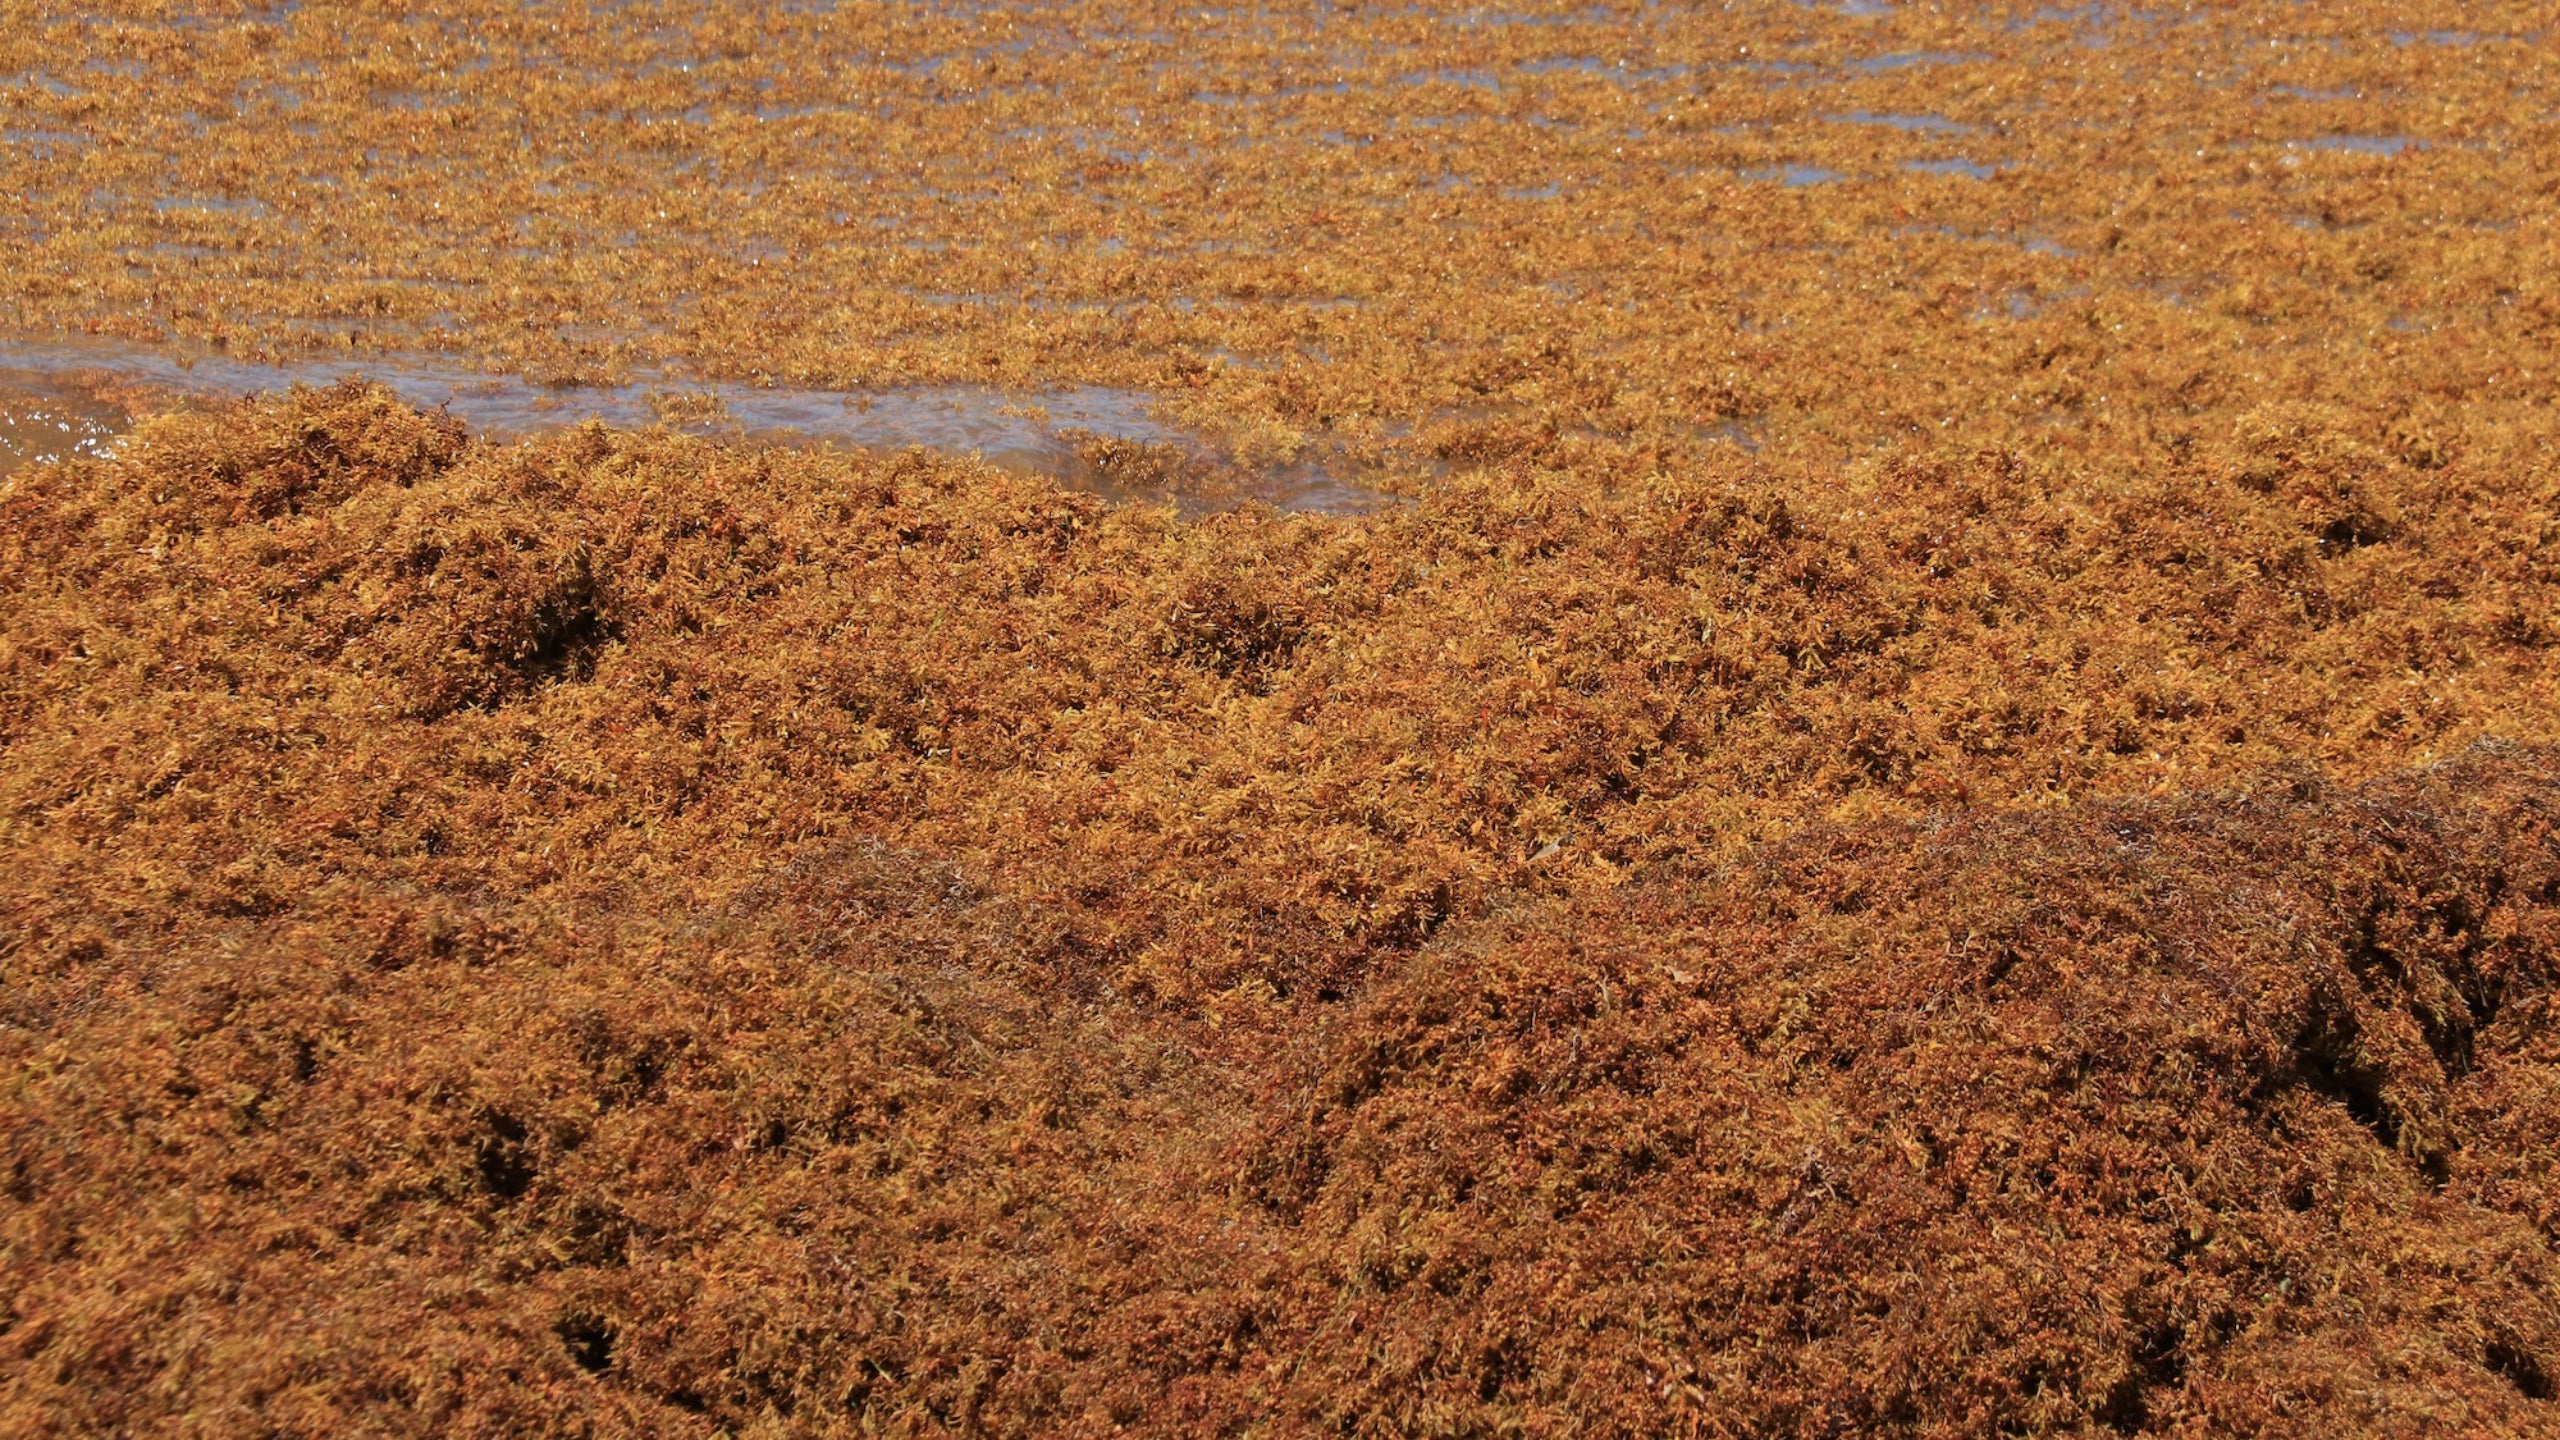 Cinturón de algas gigantes se dirige a las playas de Florida